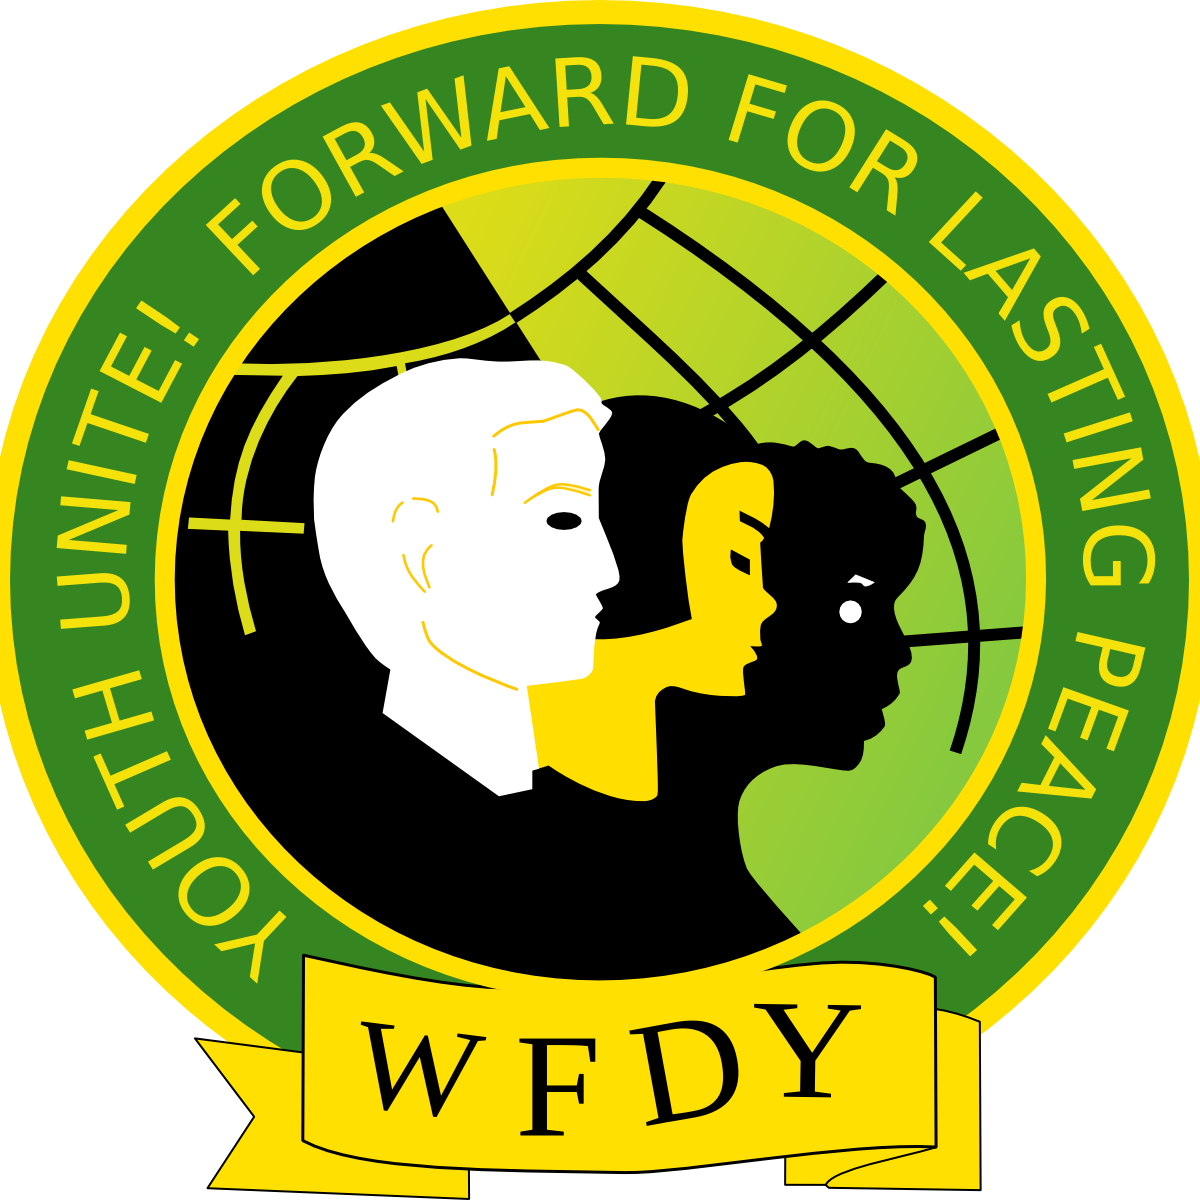 10 novembre 1945 - Fondation de la Fédération Mondiale de la Jeunesse Démocratique (FMJD-WFDY)